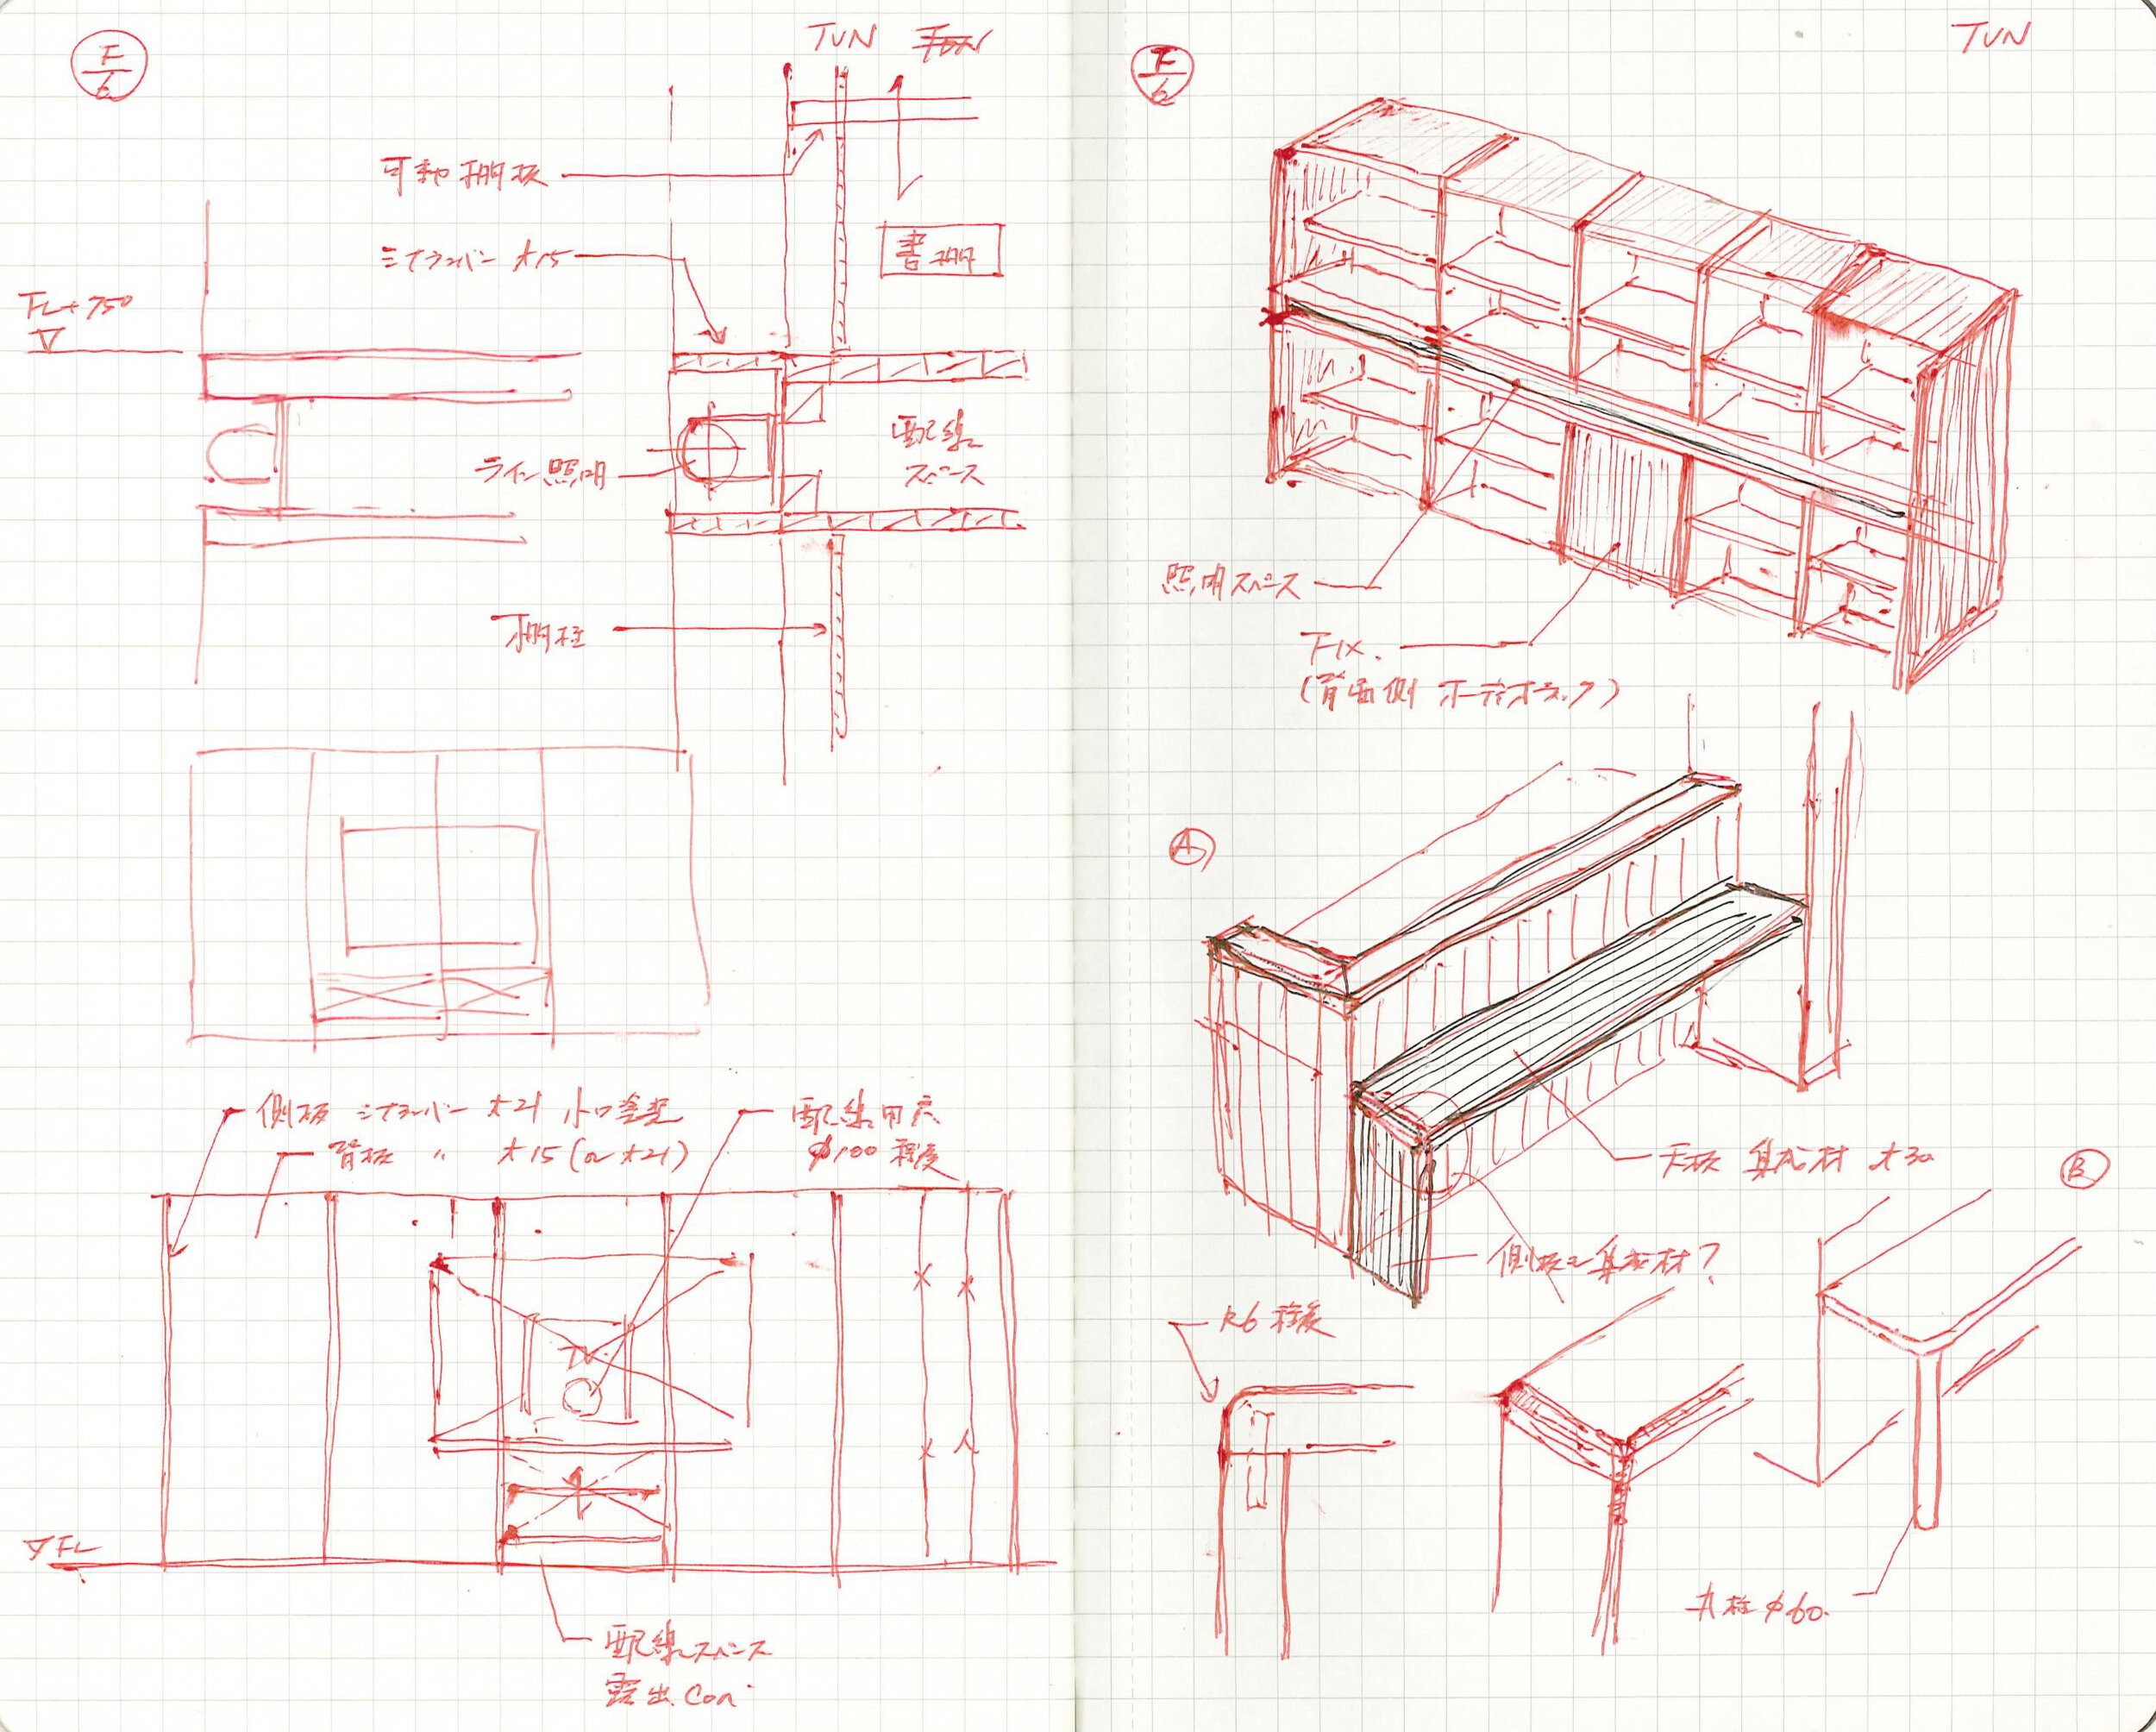  Sketch: Furniture 